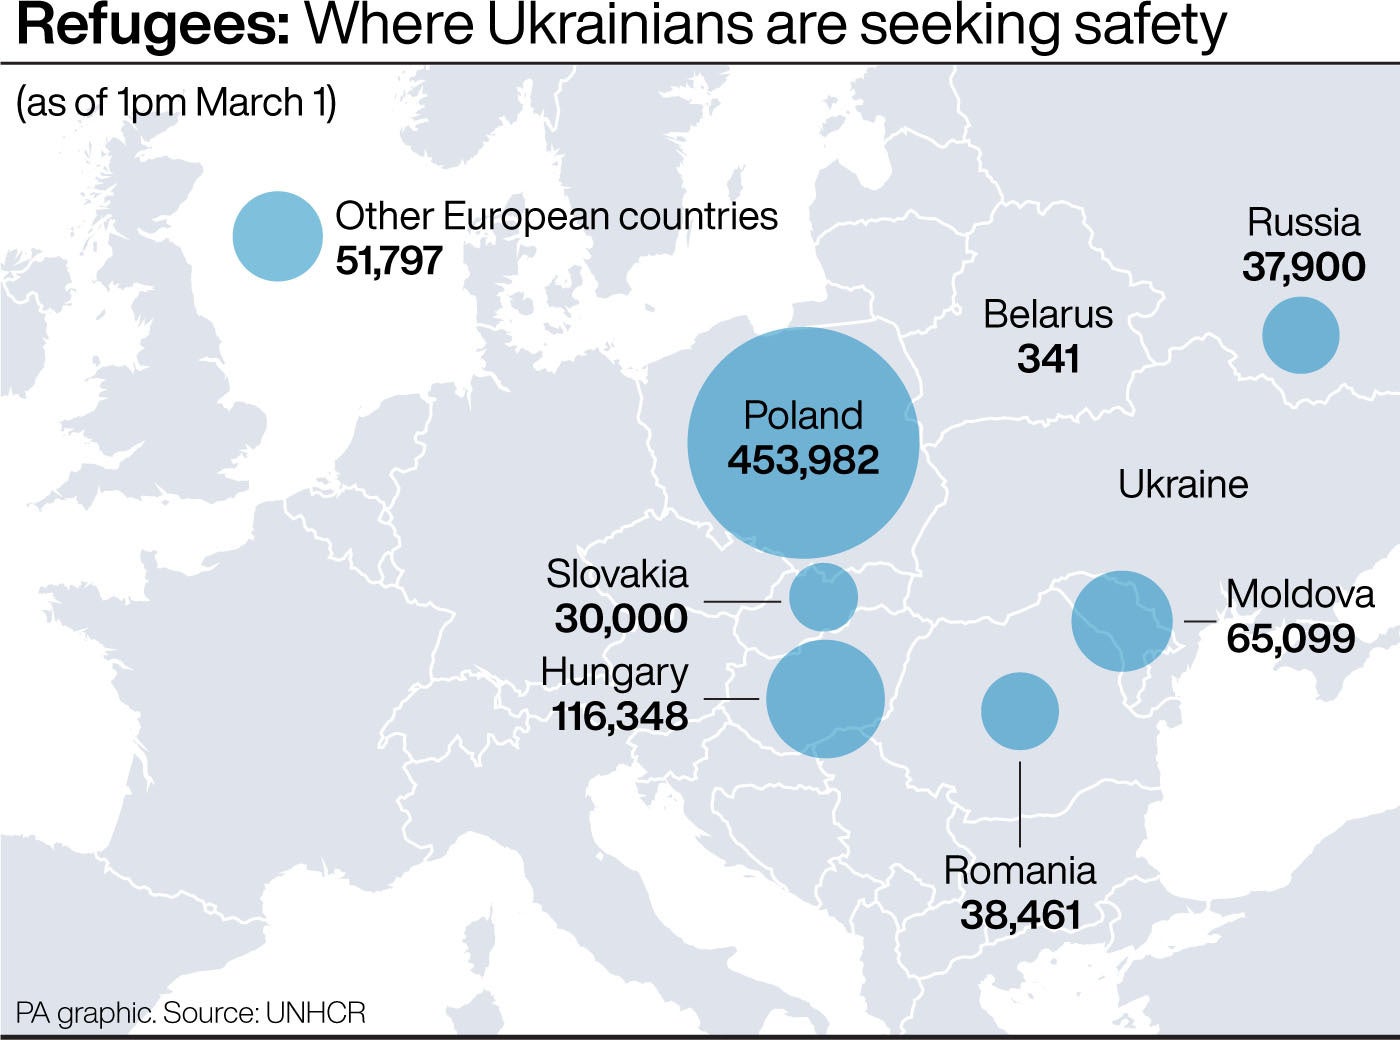 Los lugares en los que los ucranianos están buscando refeugio